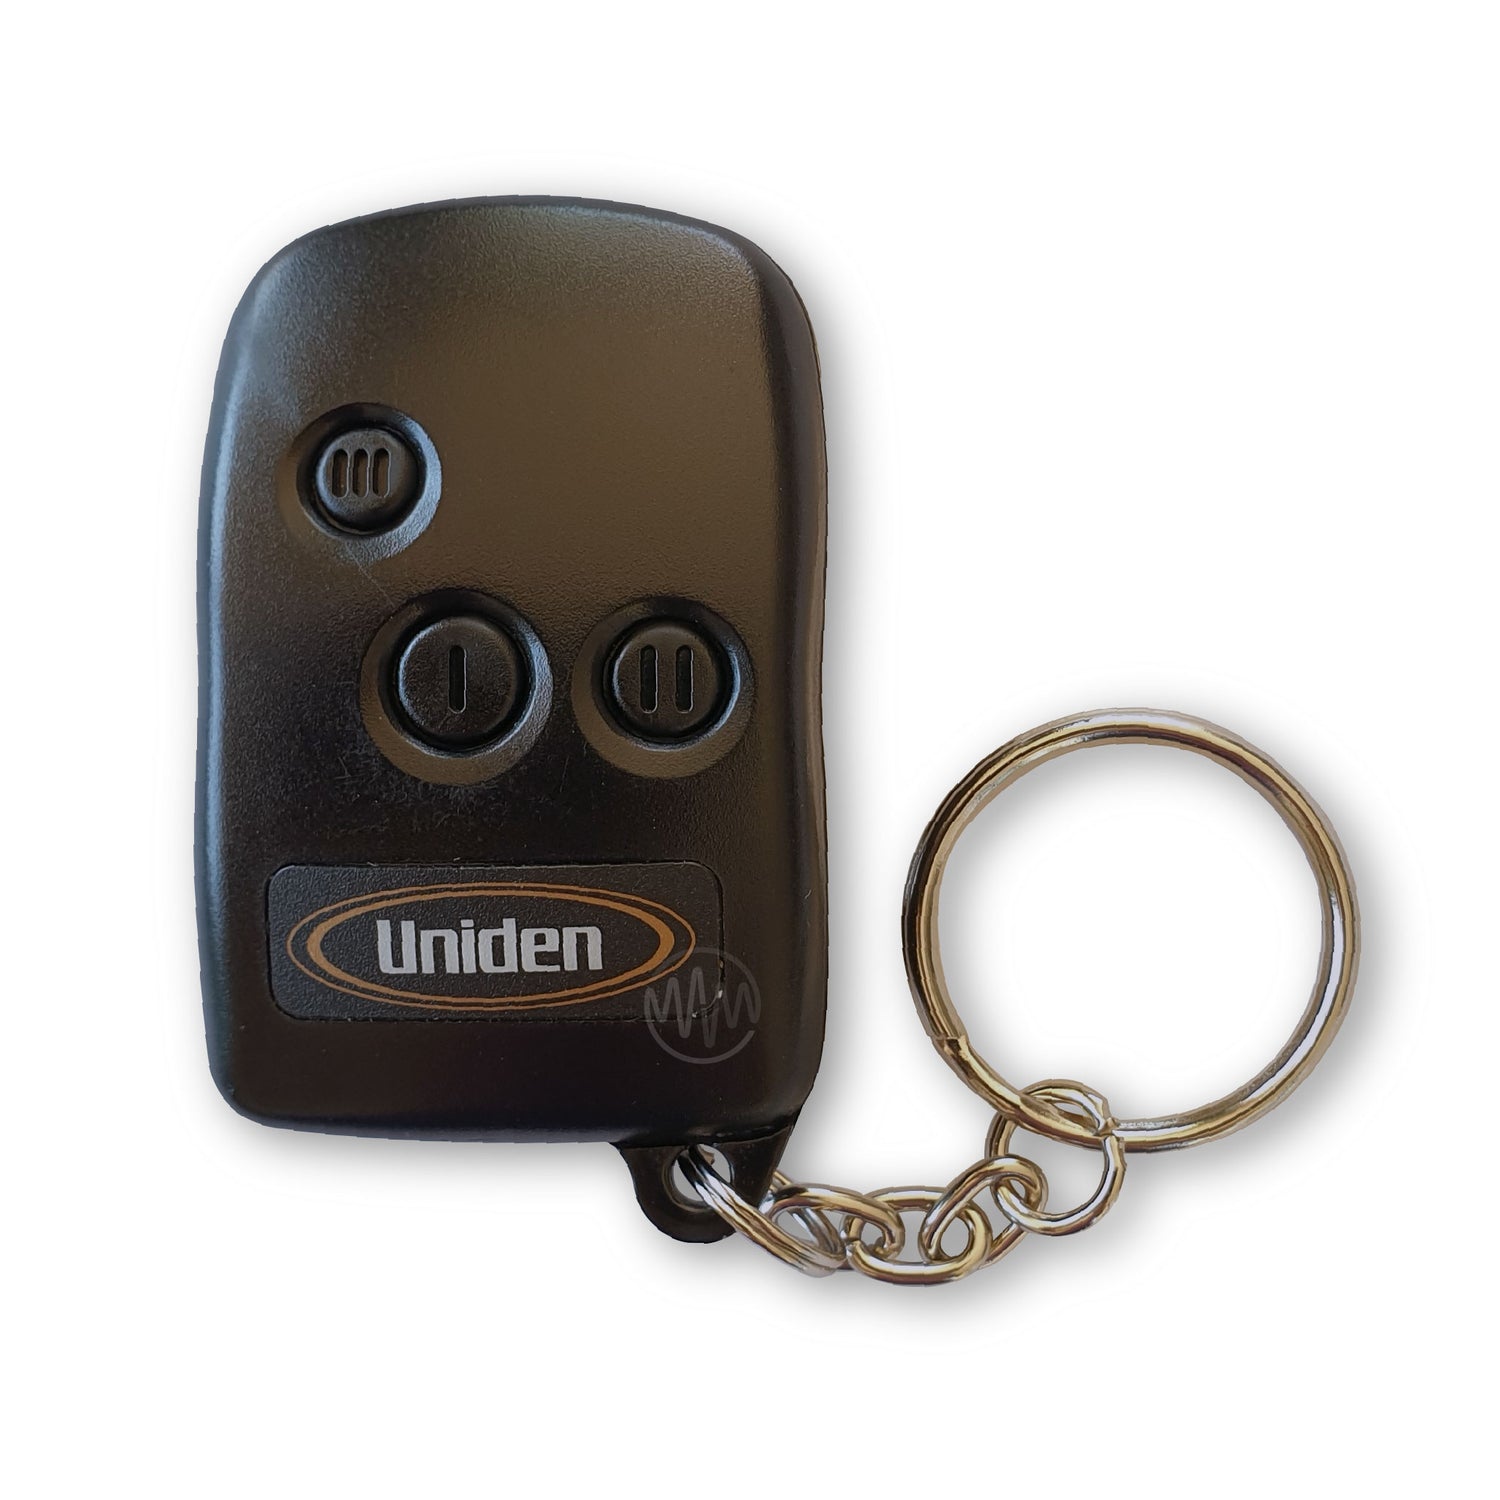 Uniden Car Alarm Remotes